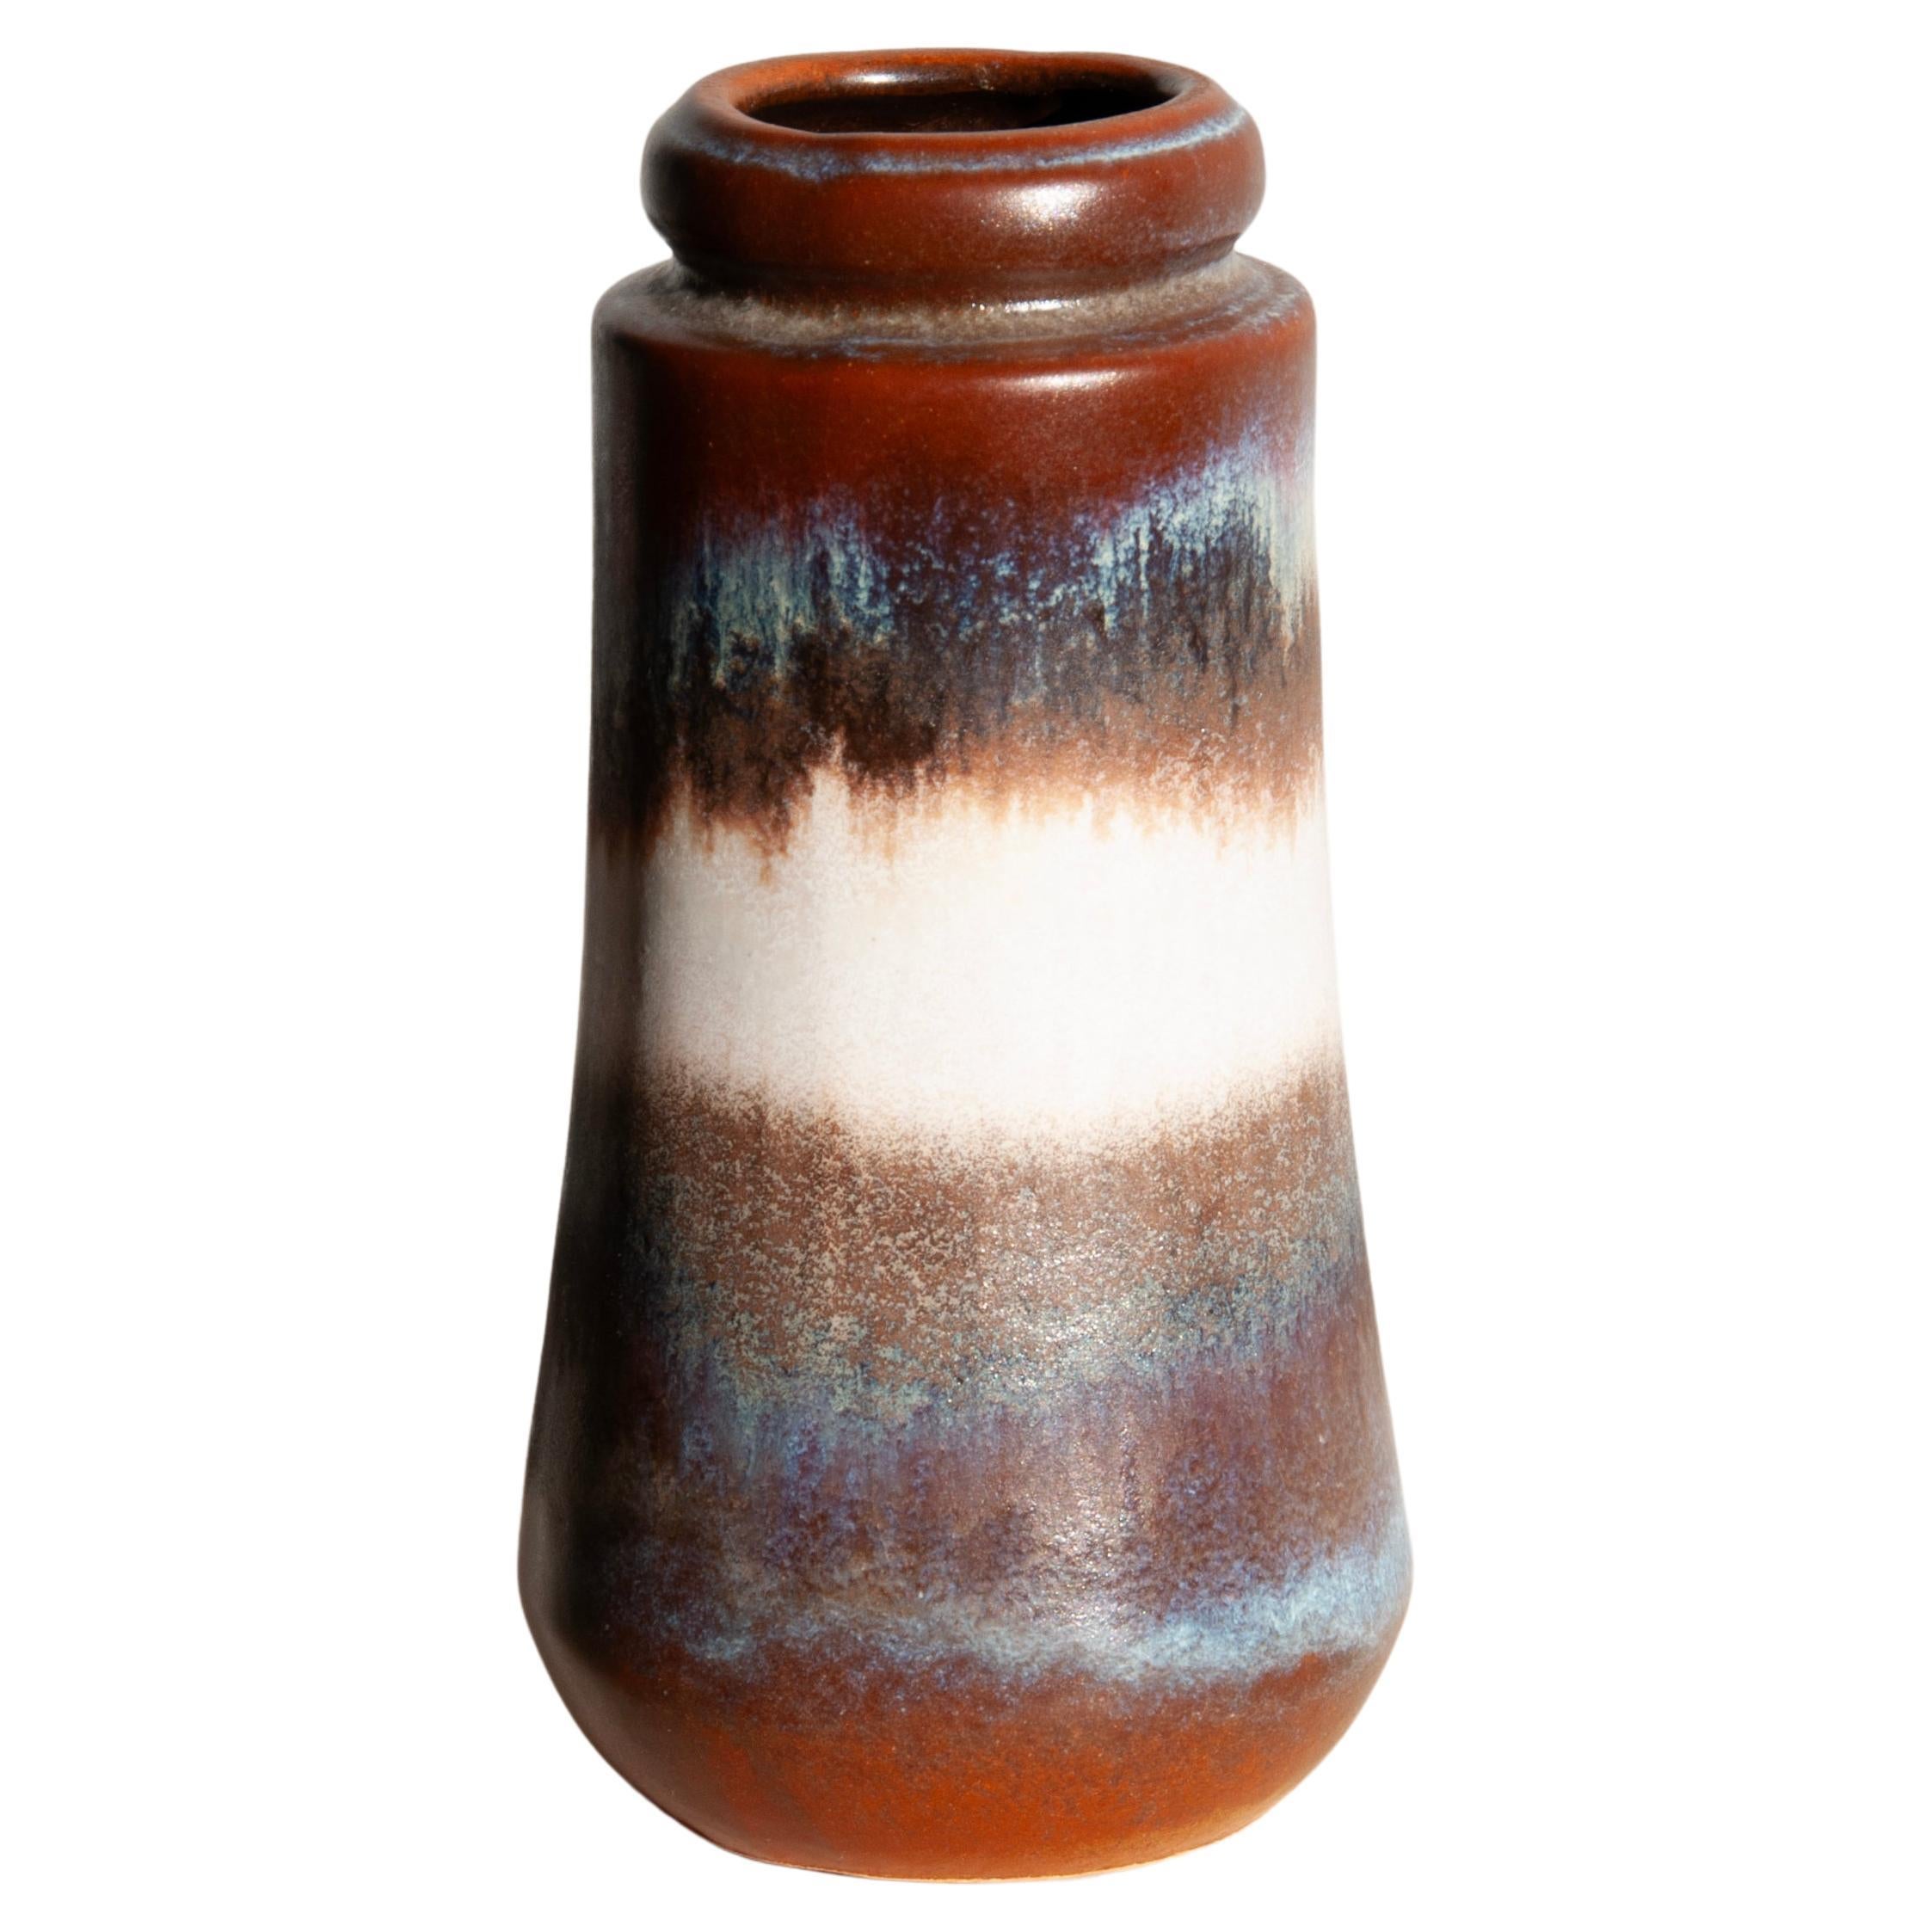 West-Germany Scheurich Keramik Vase - Model 209-18